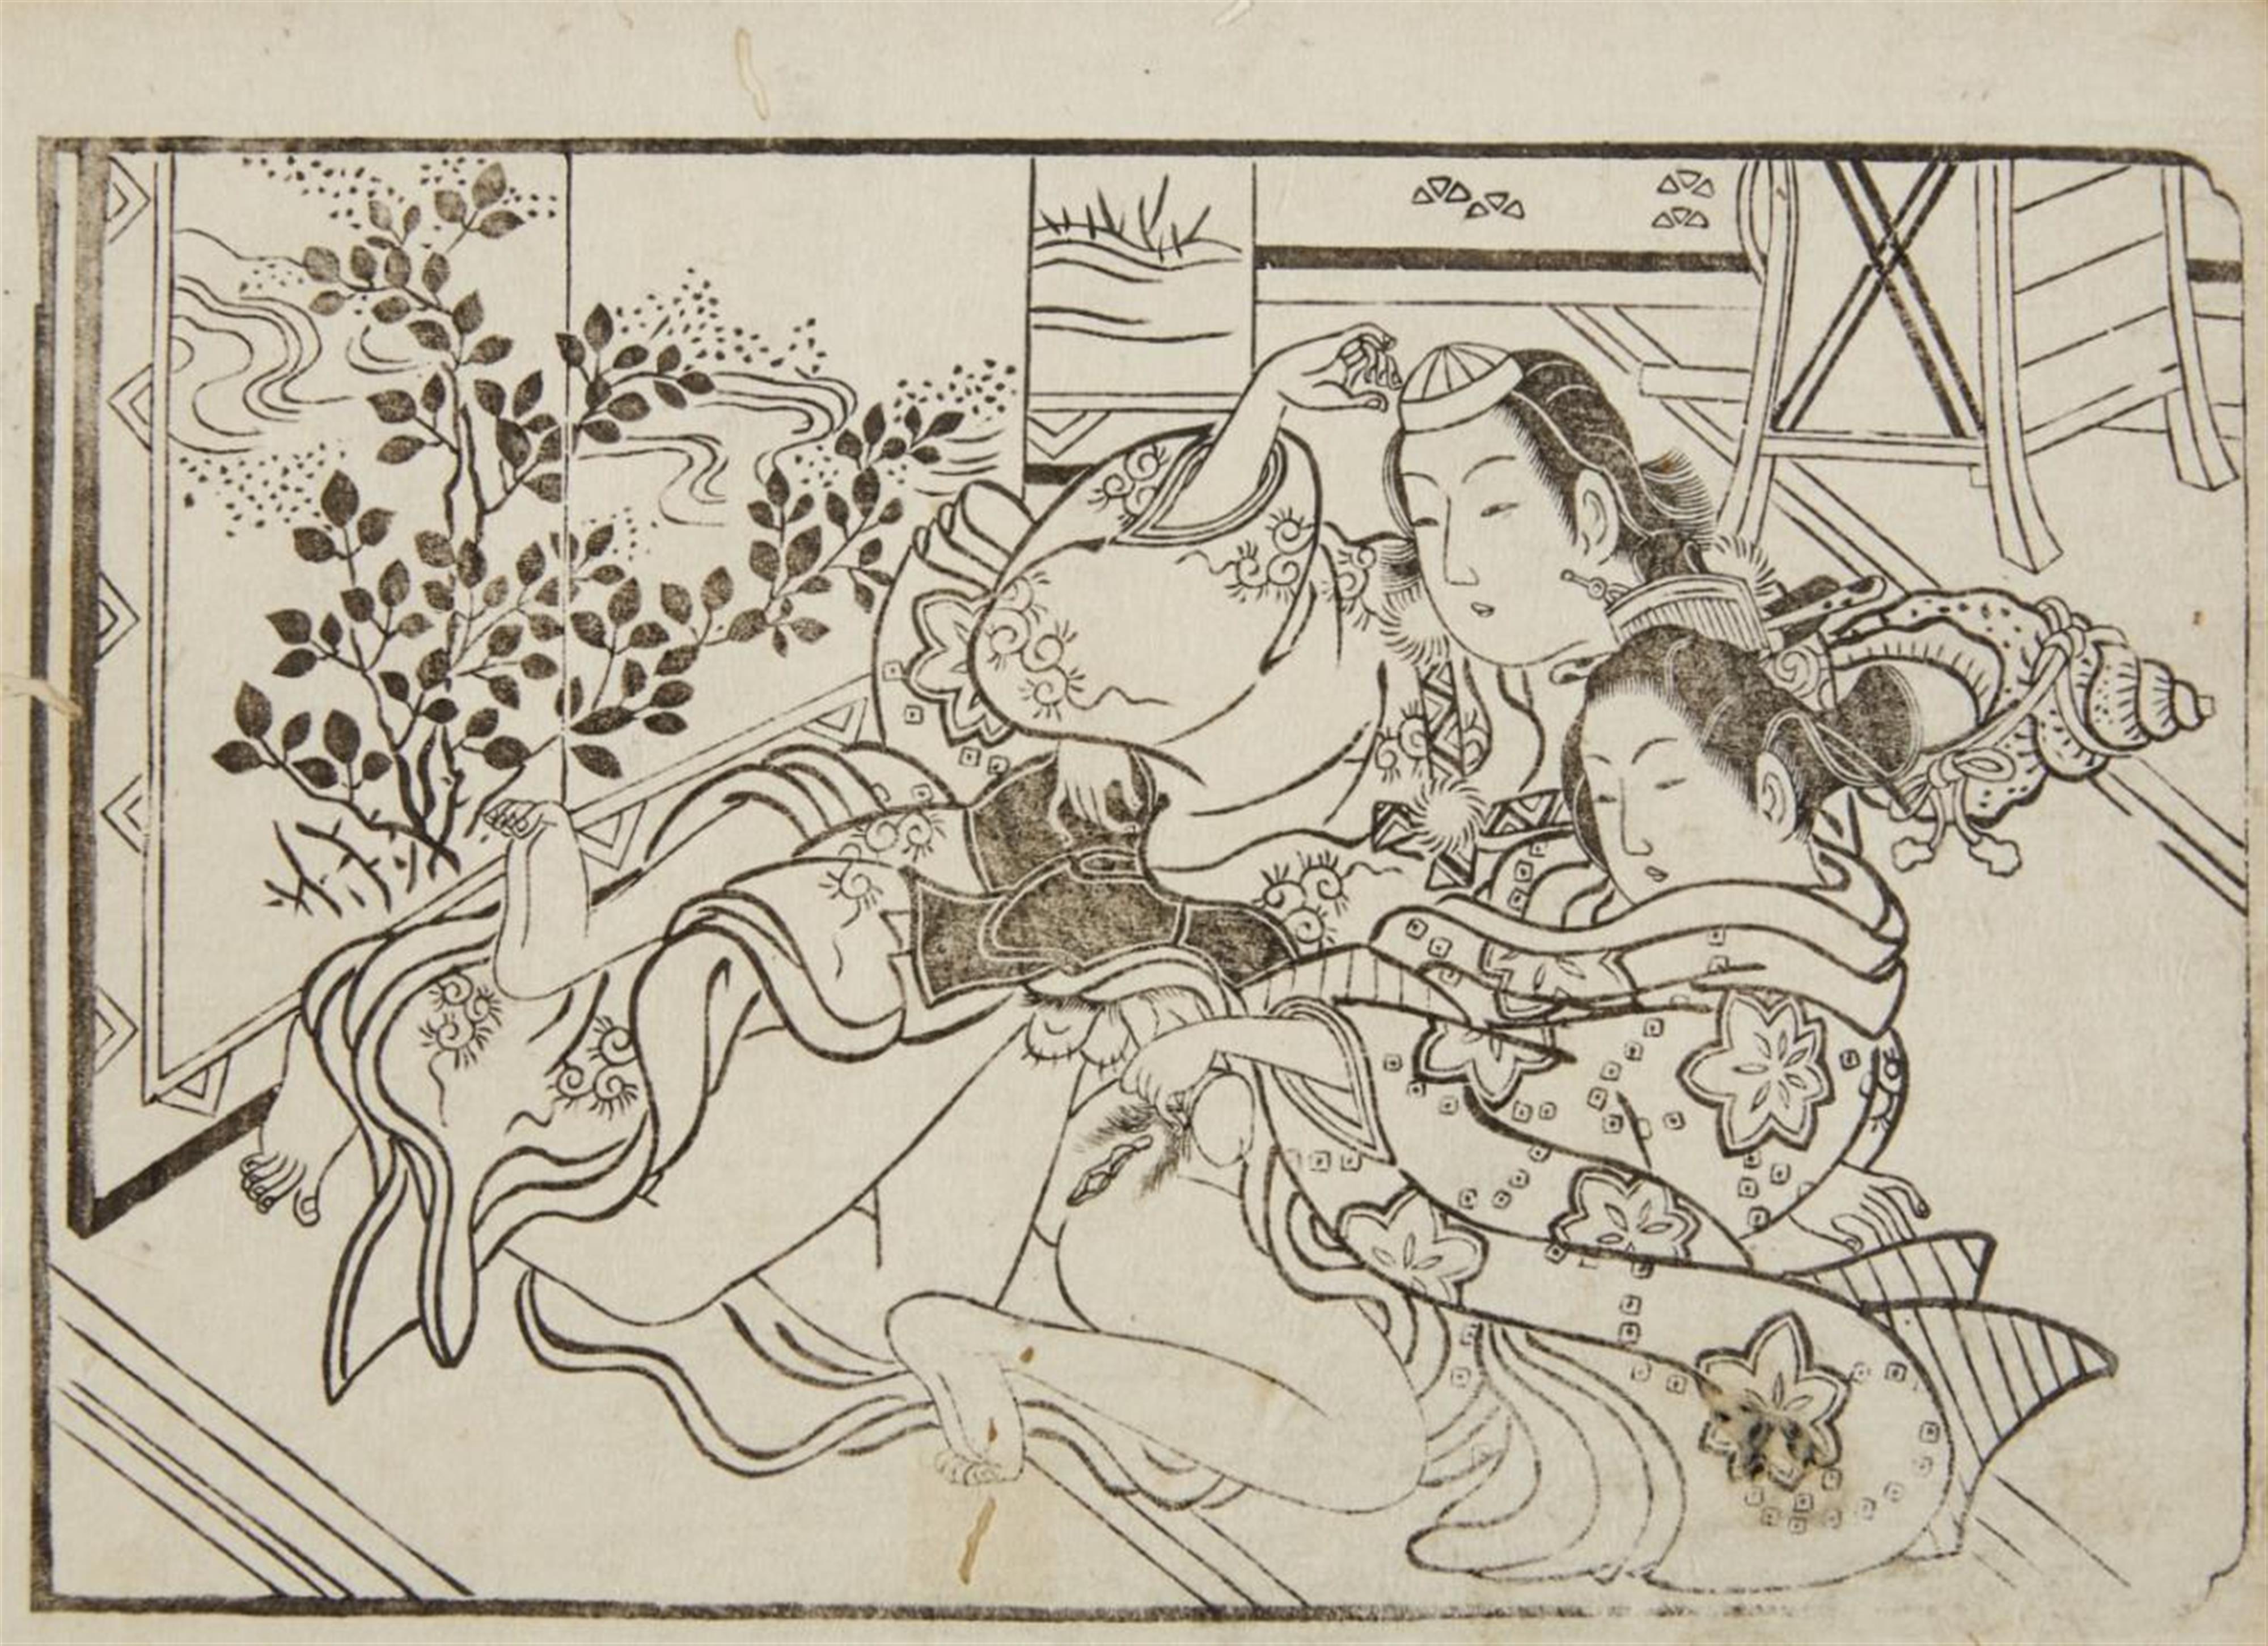 Kitagawa Utamaro
Various Artists - Kitagawa Utamaro (1753-1806) and various artists of the 18th and 19th century - image-5